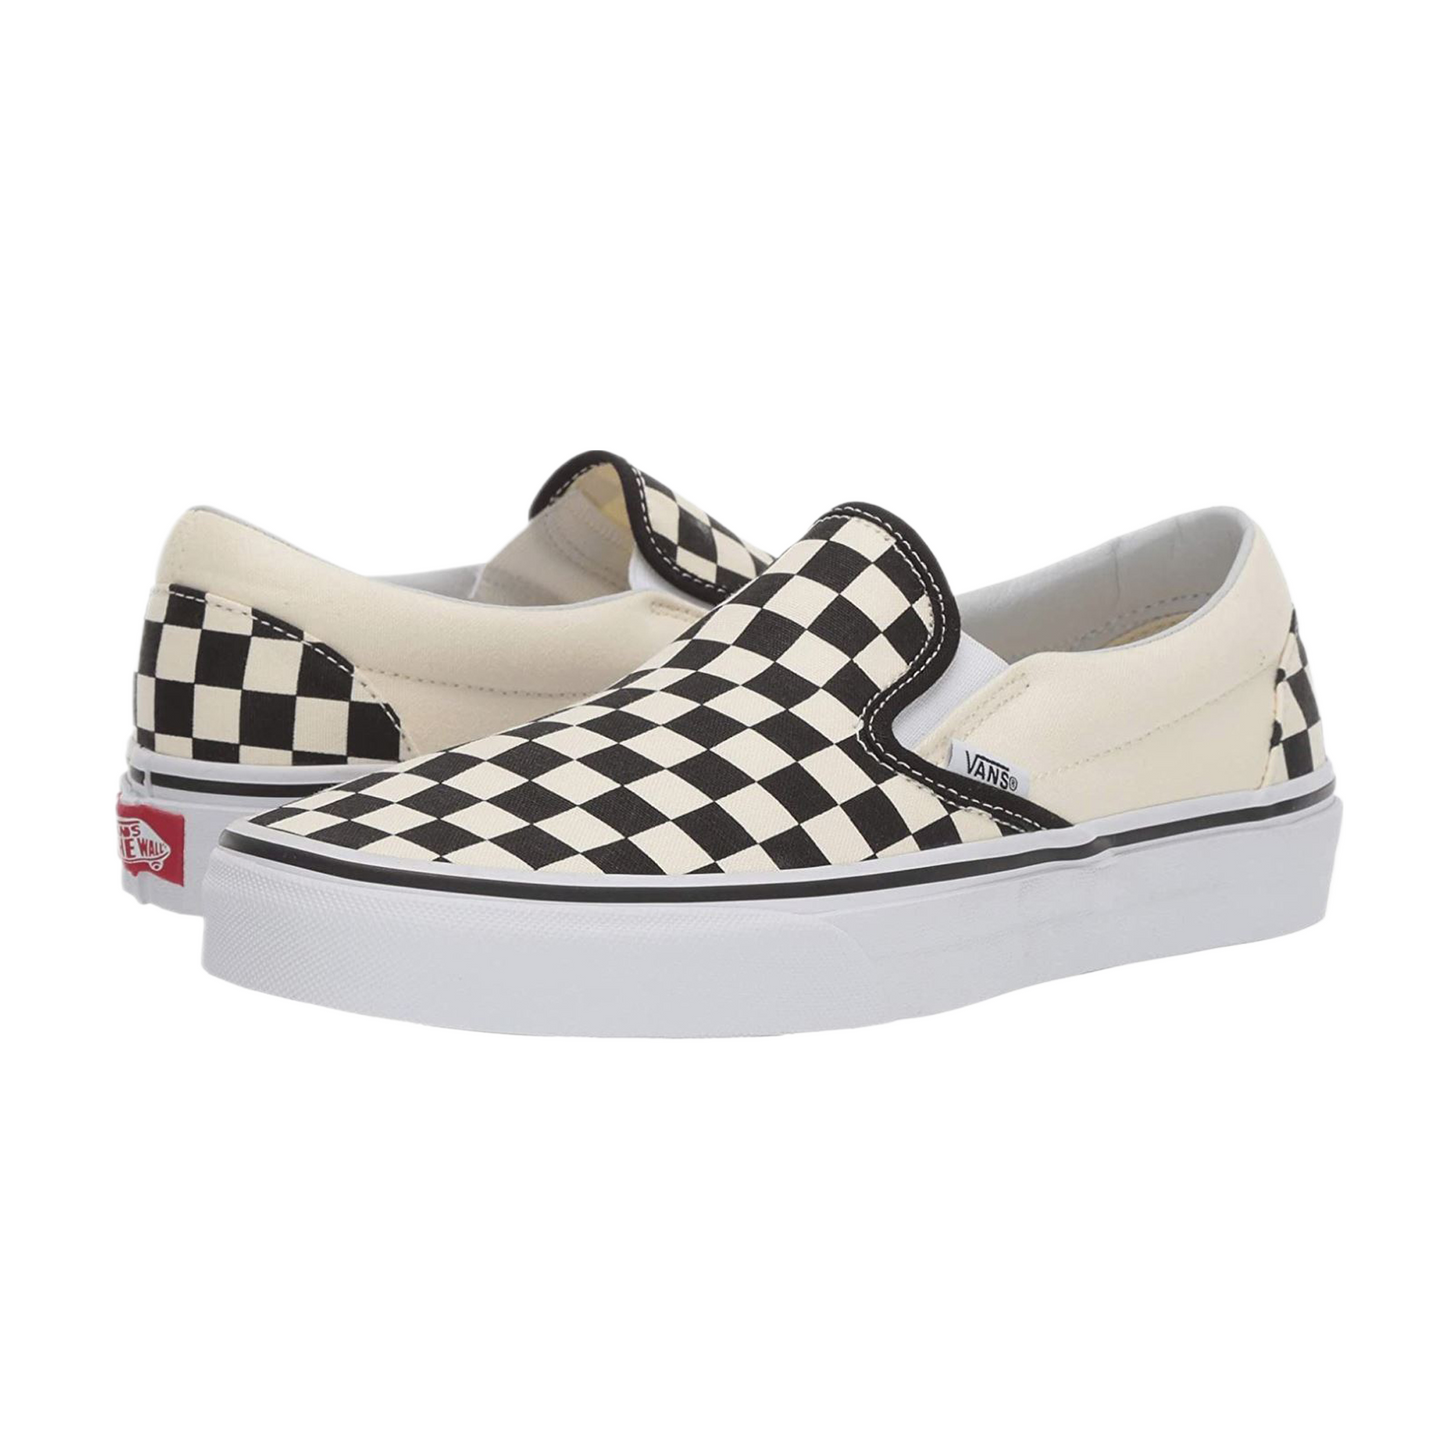 Vans Adult Unisex Checkerboard Slip-On Skate Shoes Black/Off White VN000EYEBWW